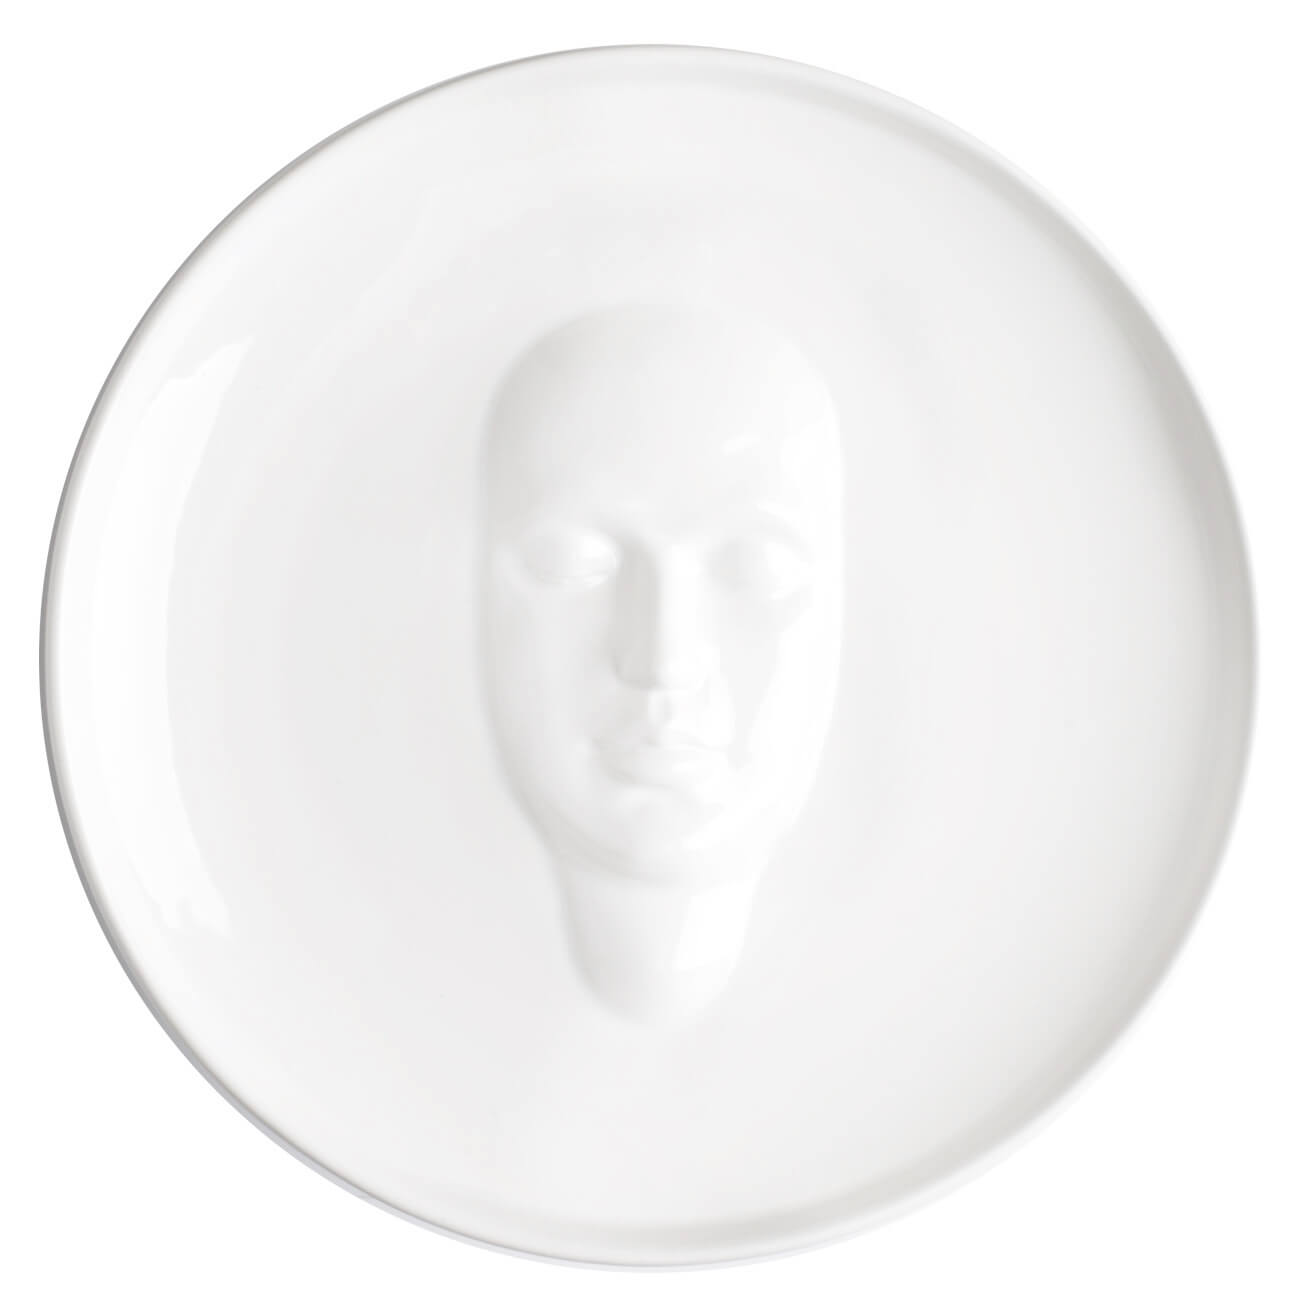 Блюдо, 24 см, керамика, белое, Лицо, Face блюдо стеклокерамика круглое 29 см белое friends time luminarc p6283